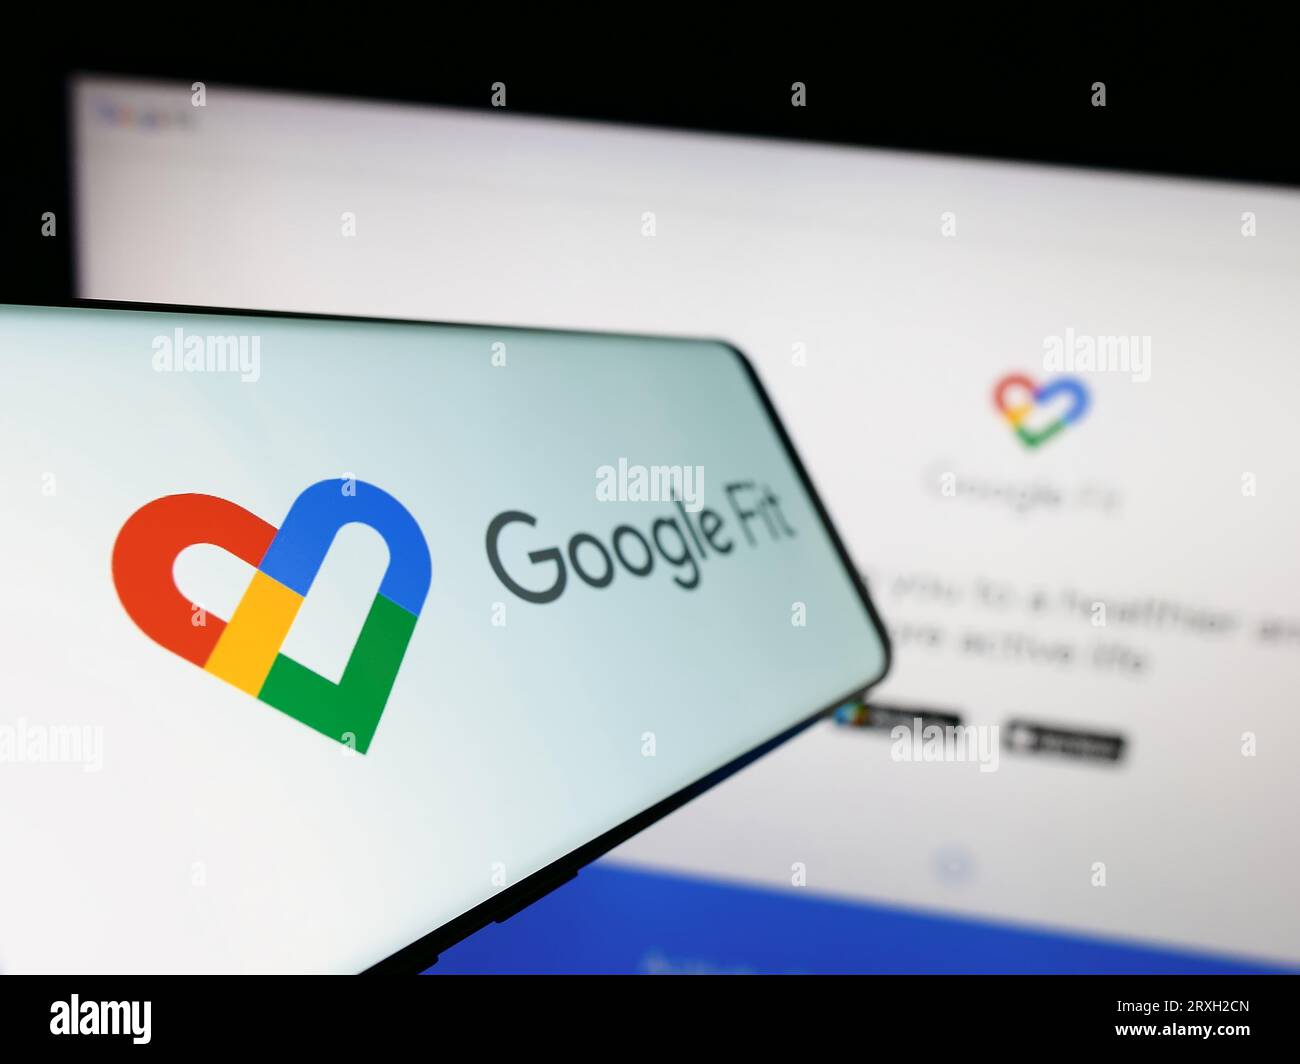 Telefono cellulare con logo del software di monitoraggio della salute Google Fit sullo schermo di fronte al sito Web dell'azienda. Mettere a fuoco sul lato sinistro del display del telefono. Foto Stock